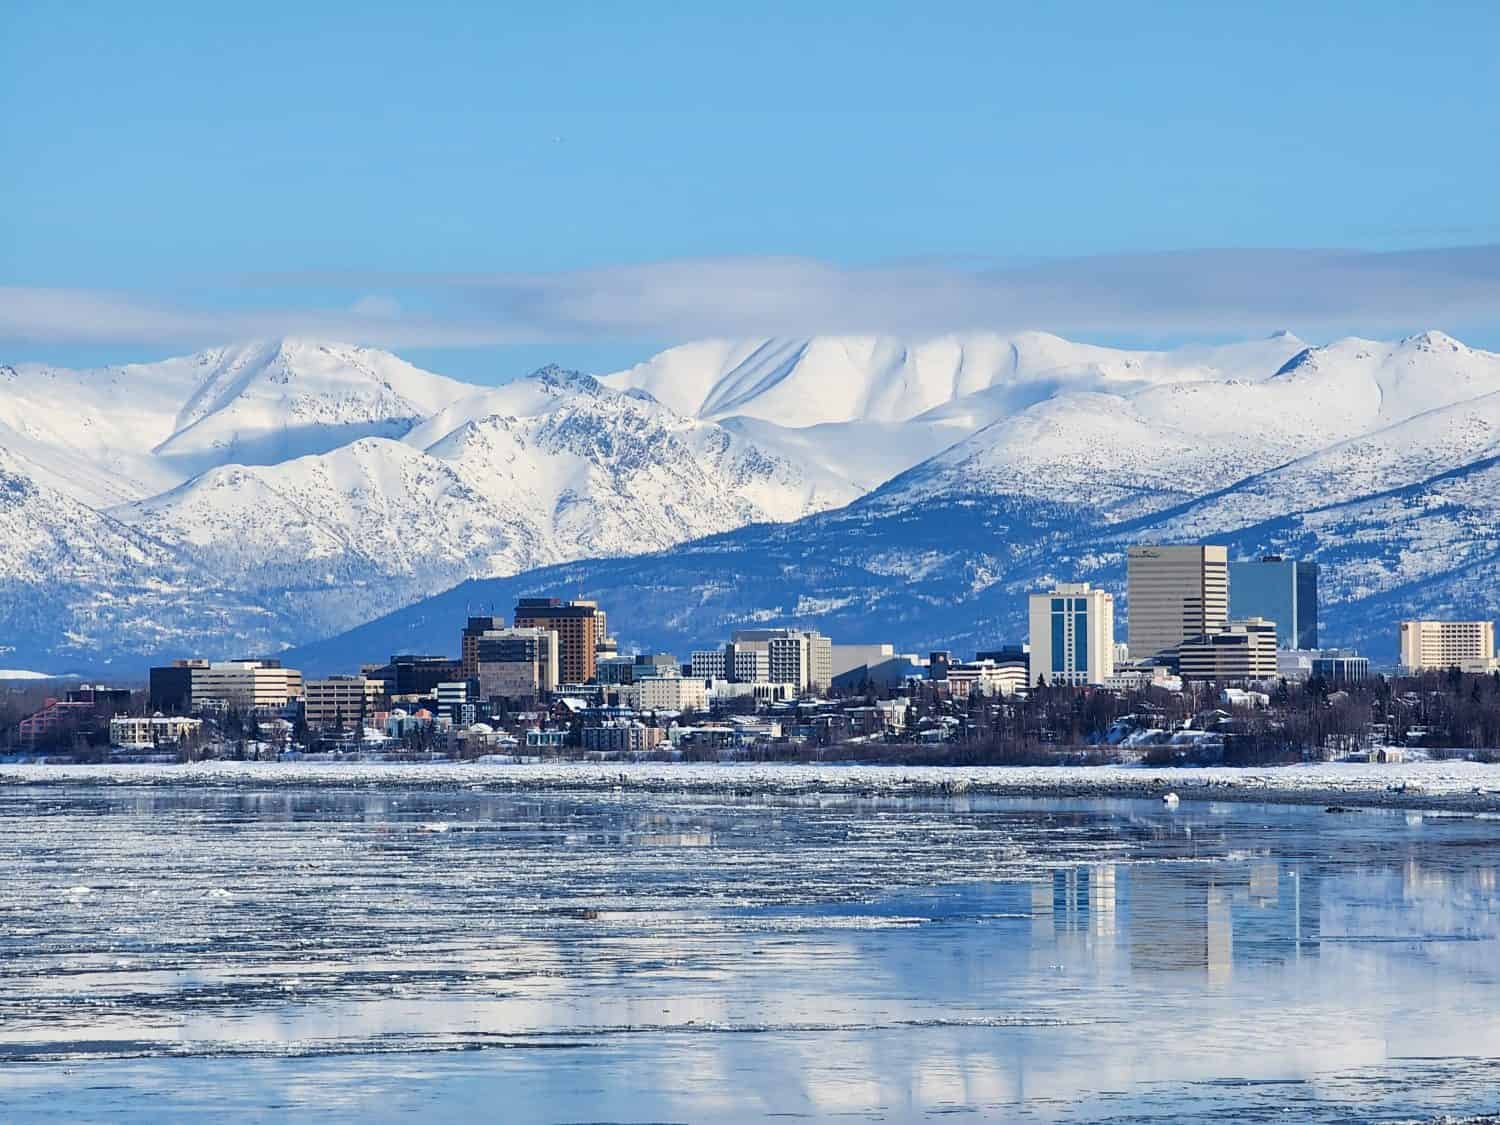 La città innevata di Anchorage, in Alaska, negli Stati Uniti d'America, è uno dei sogni di molte persone da visitare per il suo paesaggio, la sua cultura e la sua cucina.